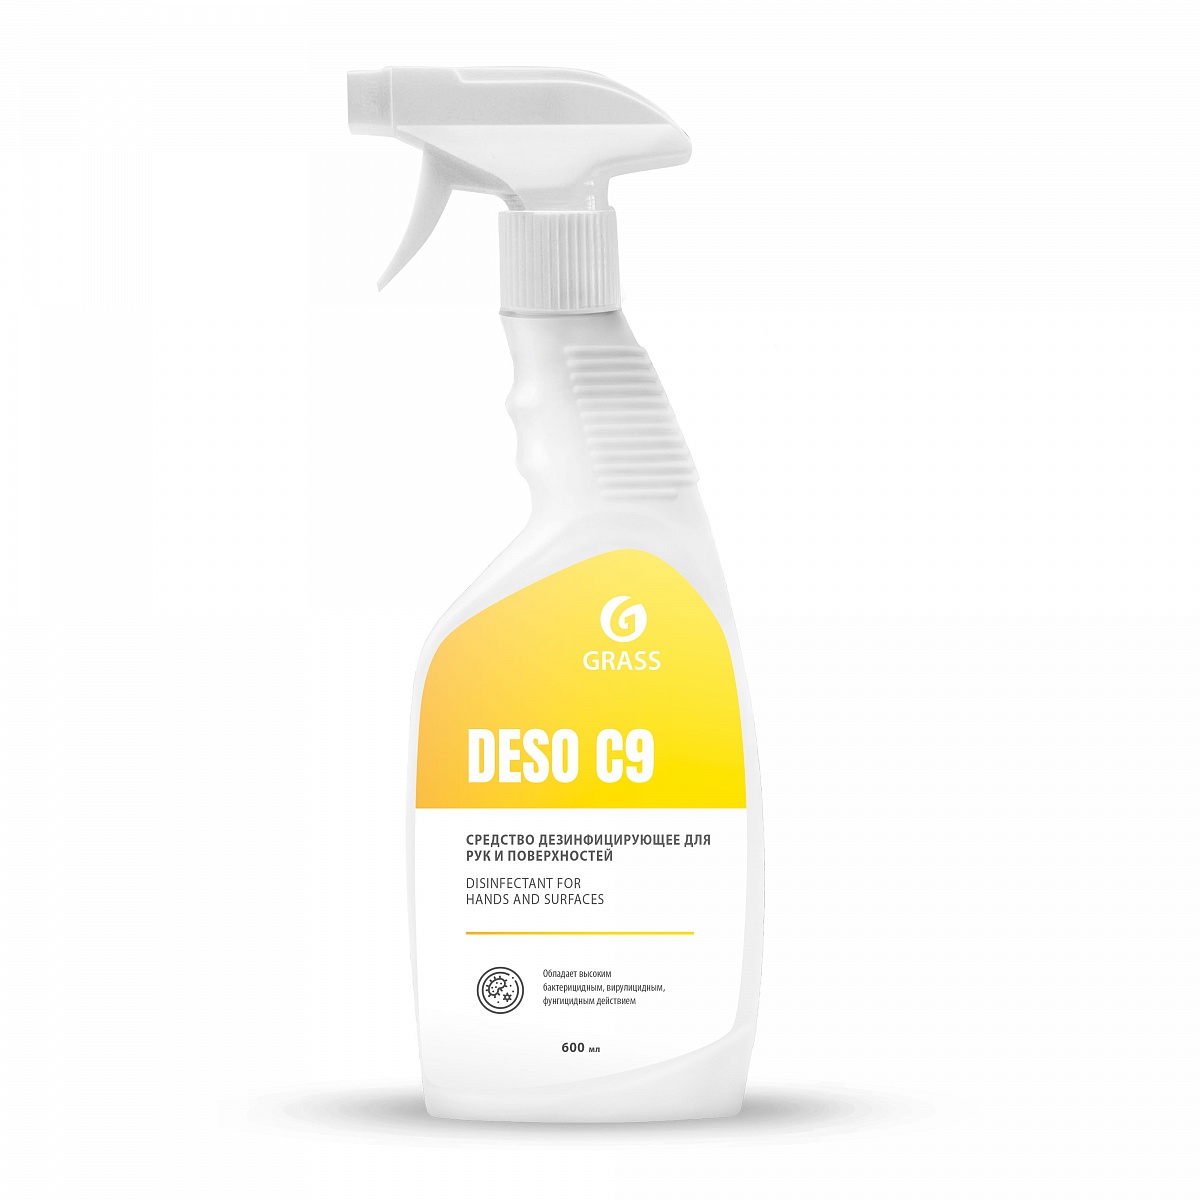 DESO (C9) 0.6 л. Средство для чистки и дезинфекции на основе изопропилового спирта, триггер. Grass